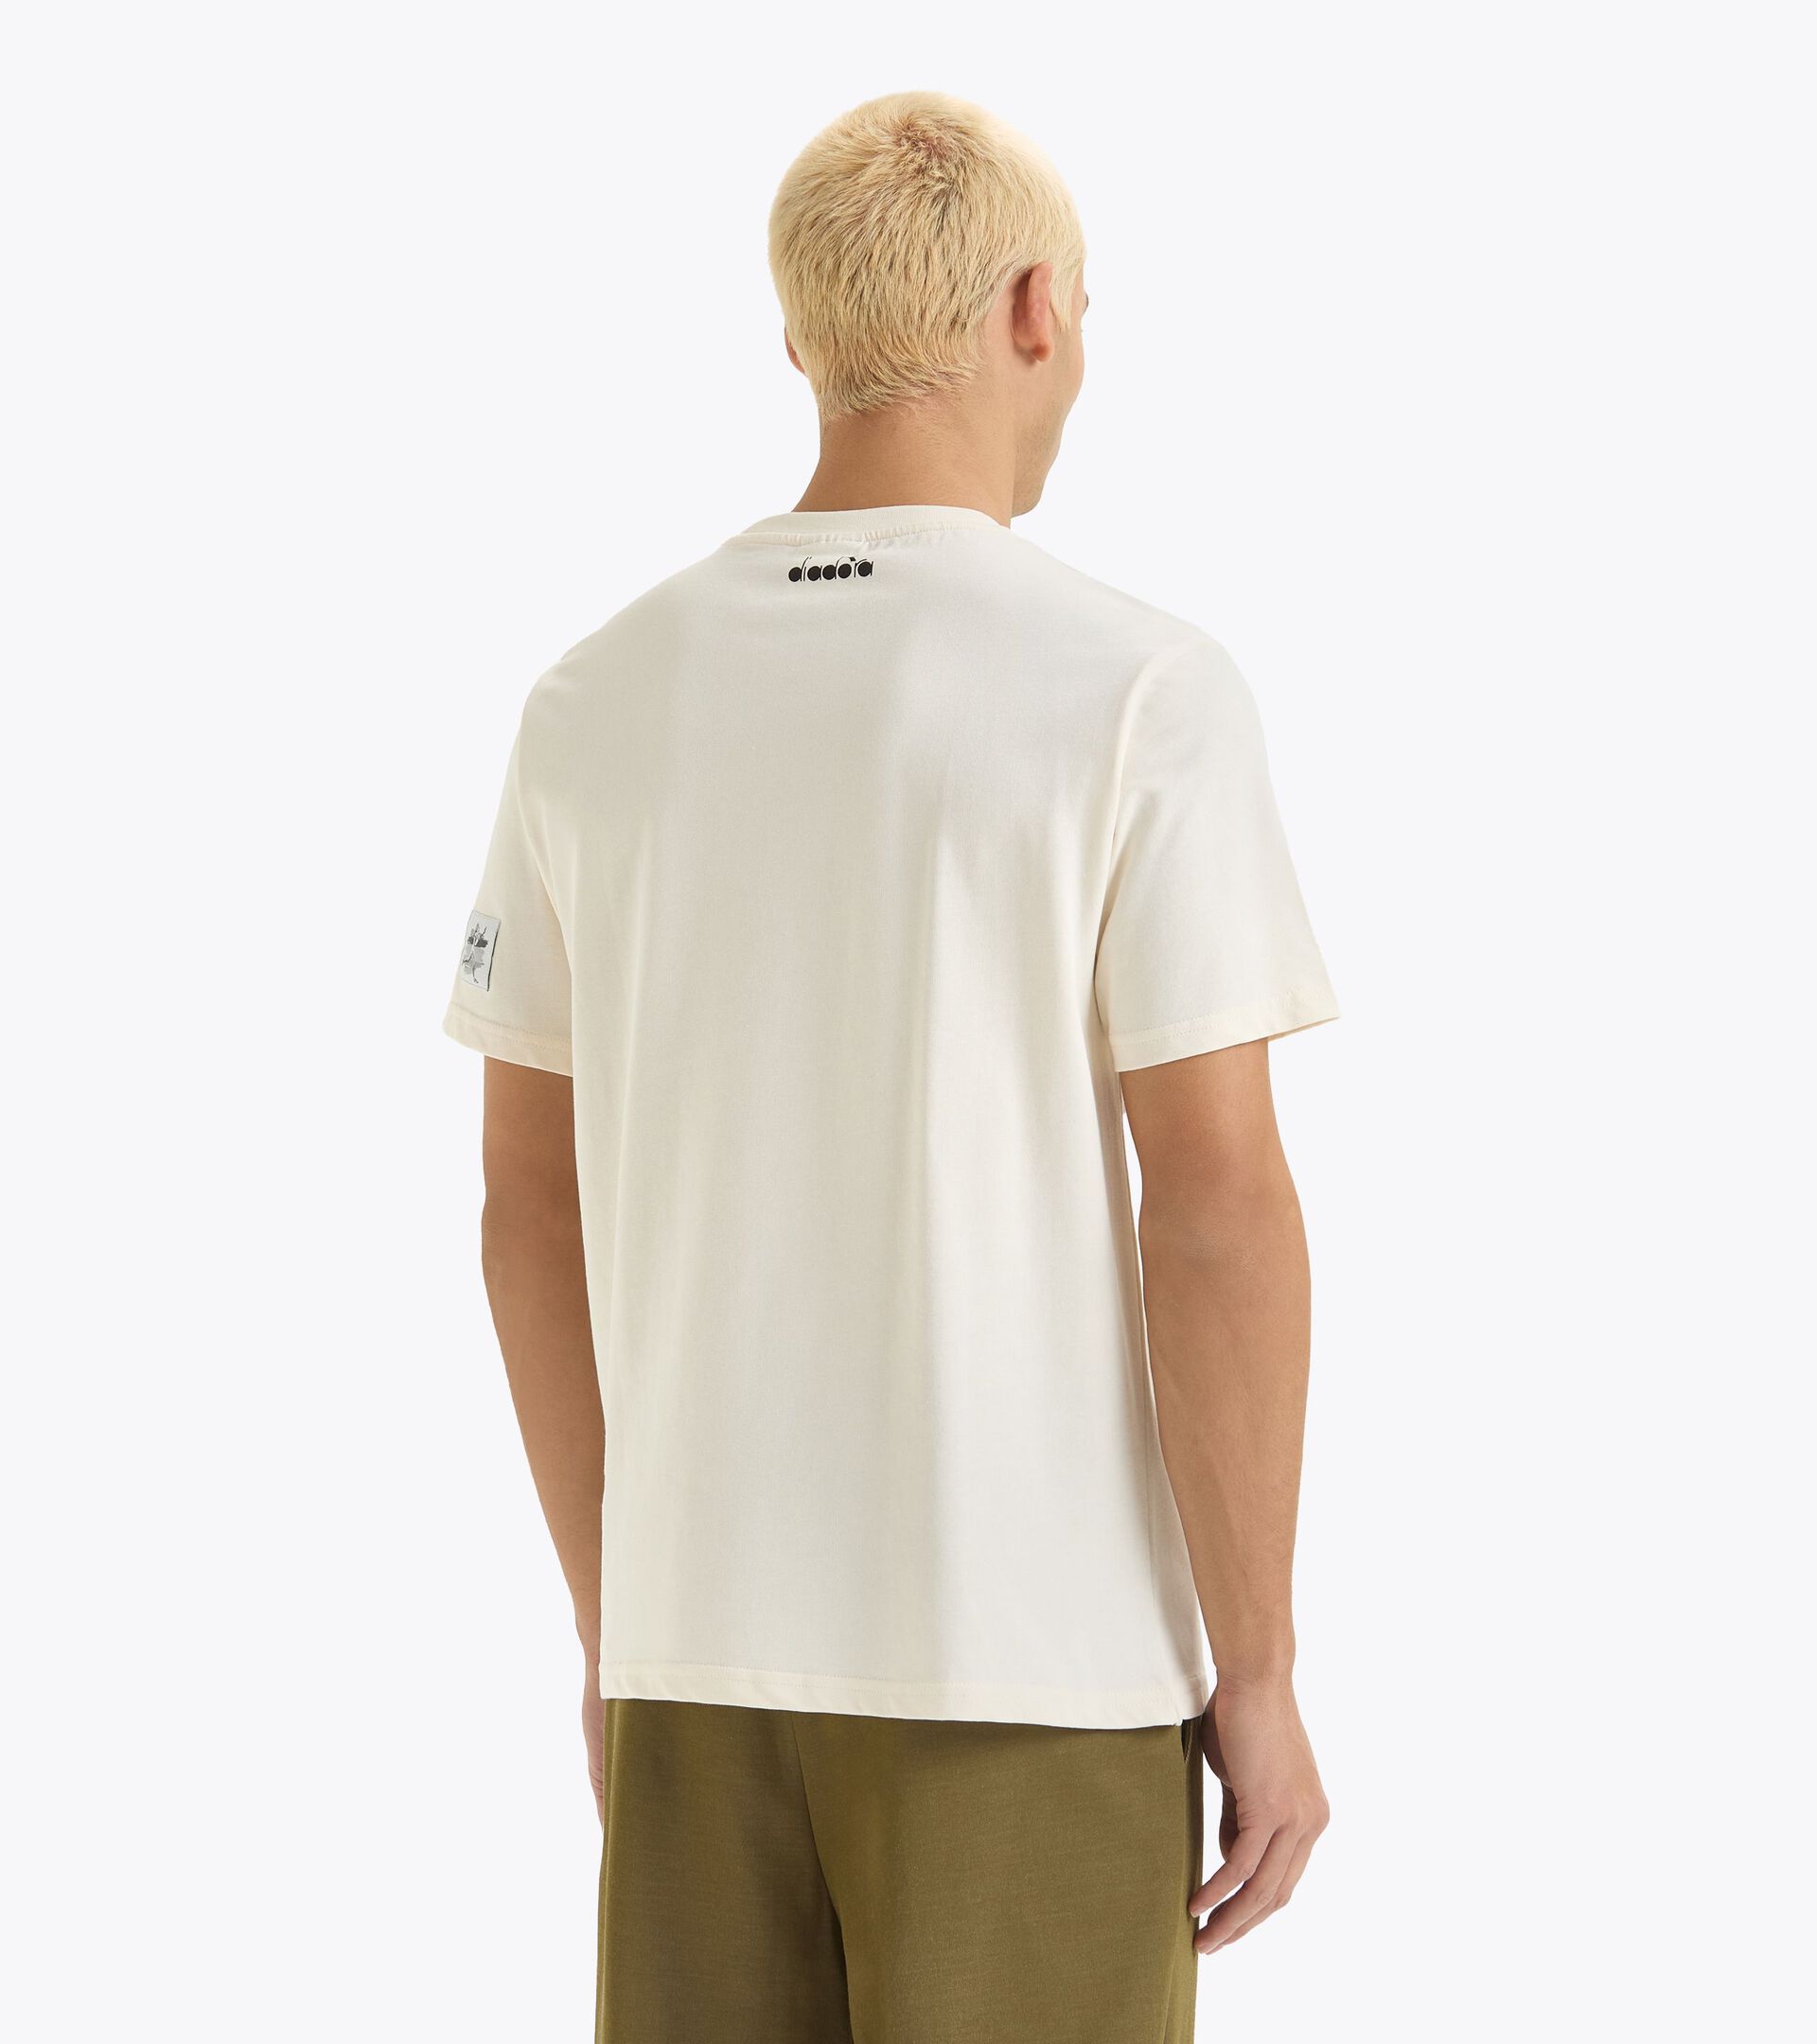 T-shirt - Gender Neutral T-SHIRT SS G.D. 1984 (226) WHISPER WHITE - Diadora